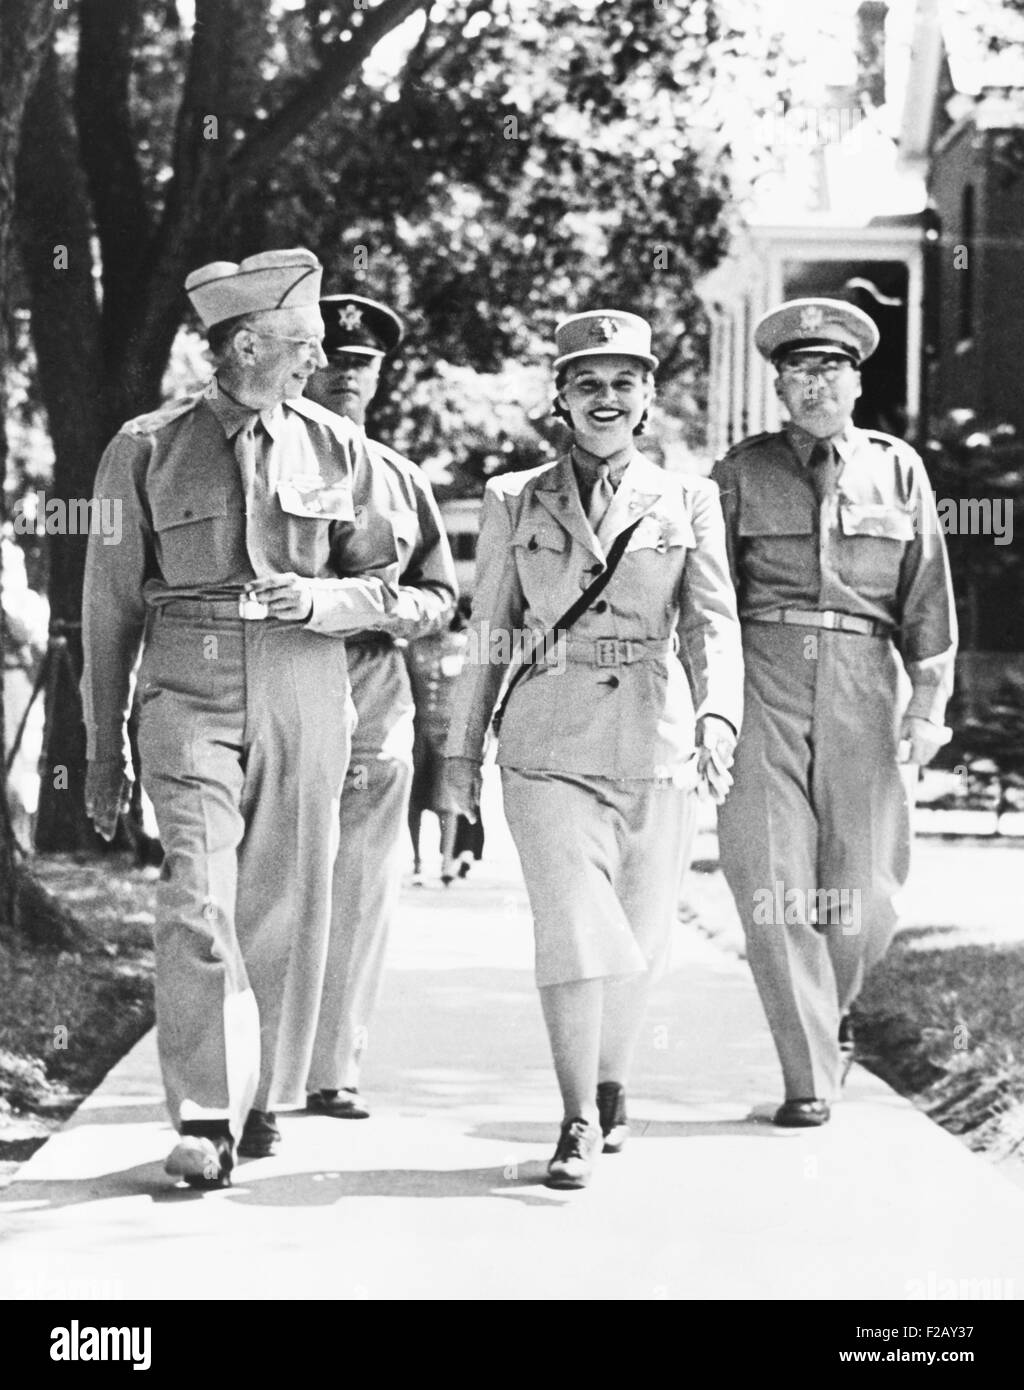 Oveta Culp Hobby, Direktor des Frauen Armee Hilfskorps, im Fort Des Moines. 21. Juli 1942. Sie inspizierte die Frauen mit Oberst Don glauben, Kommandant (links) und Kapitän Van Kennedy. (CSU 2015 9 894) Stockfoto